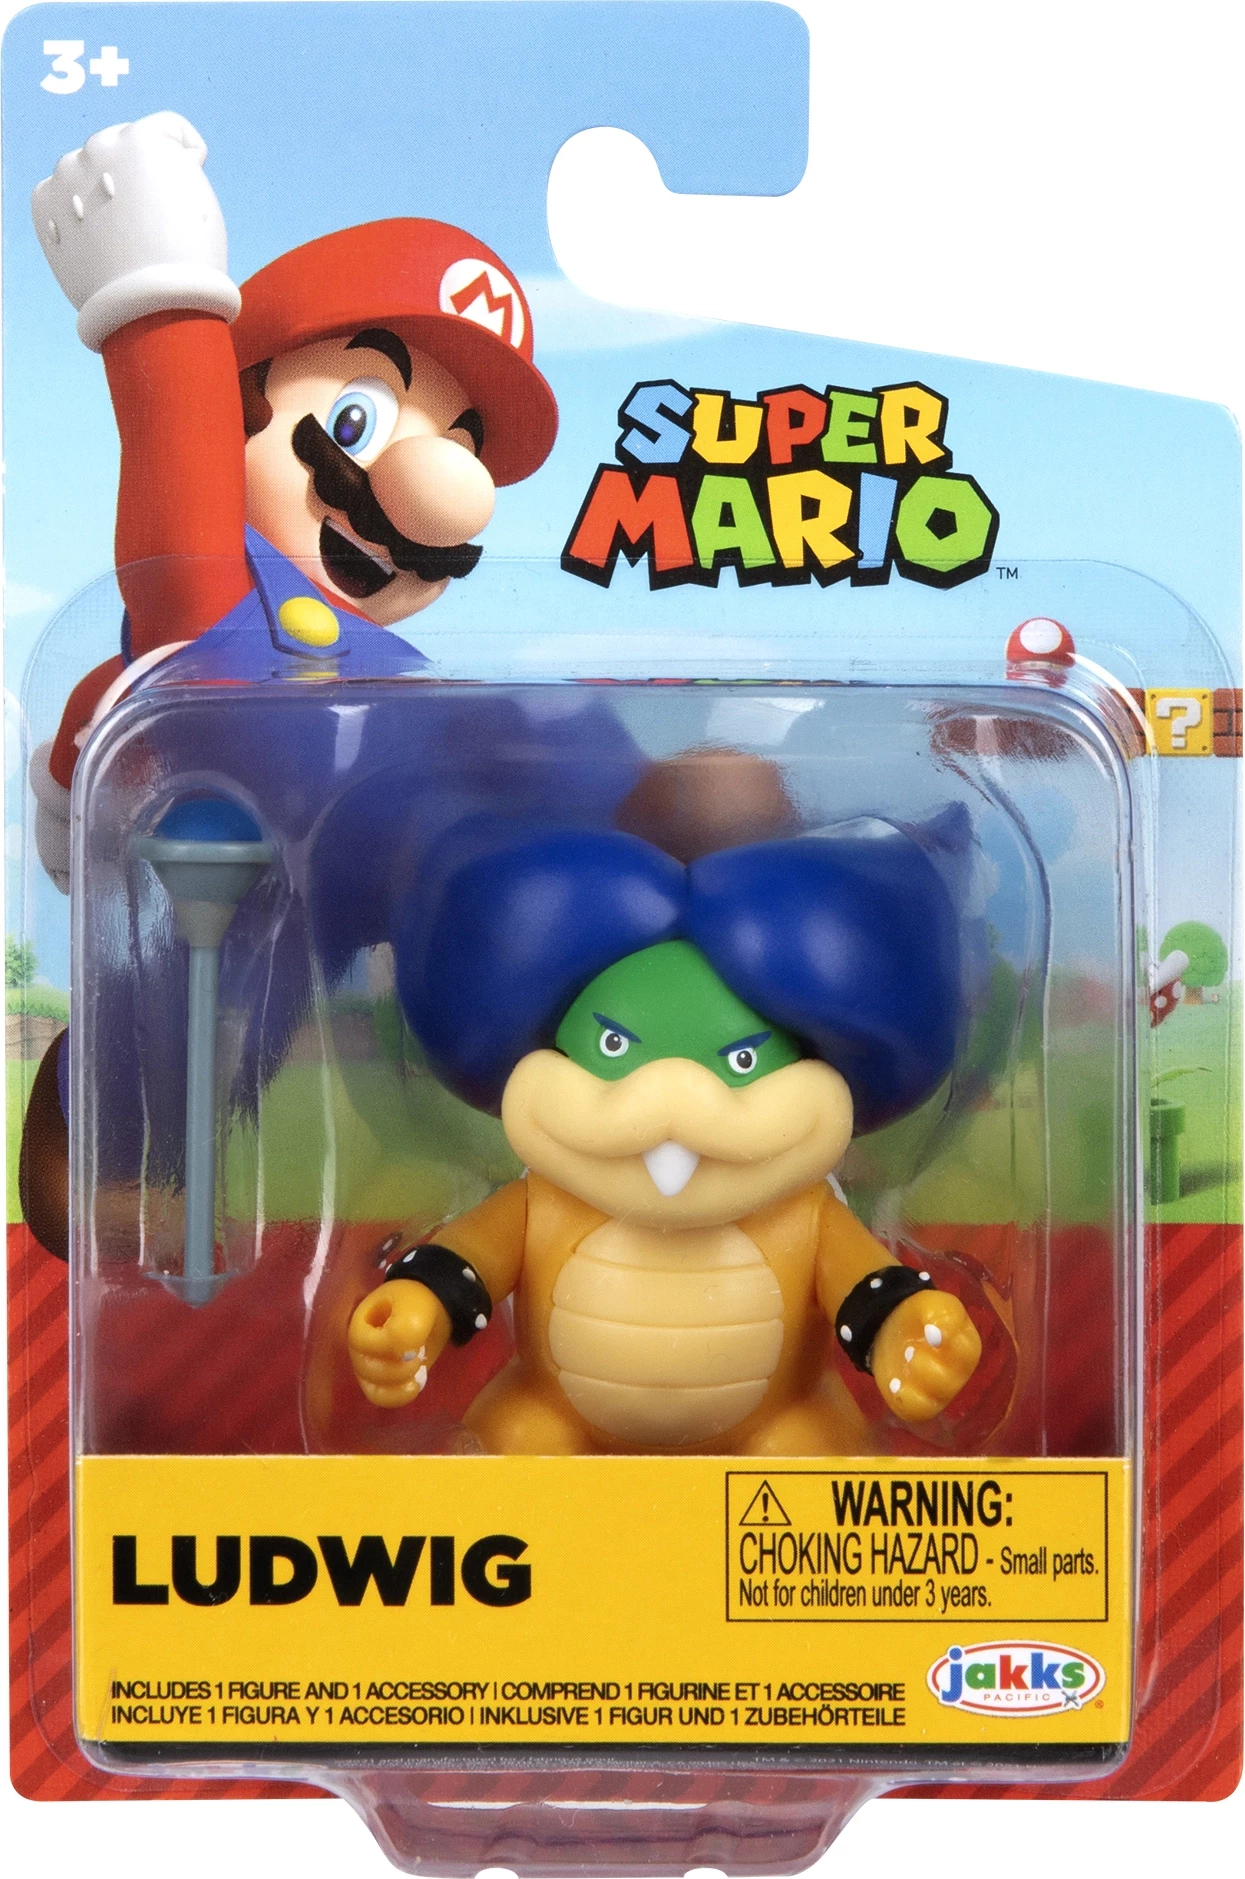 Super Mario Mini Action Figure - Ludwig voor de Merchandise kopen op nedgame.nl